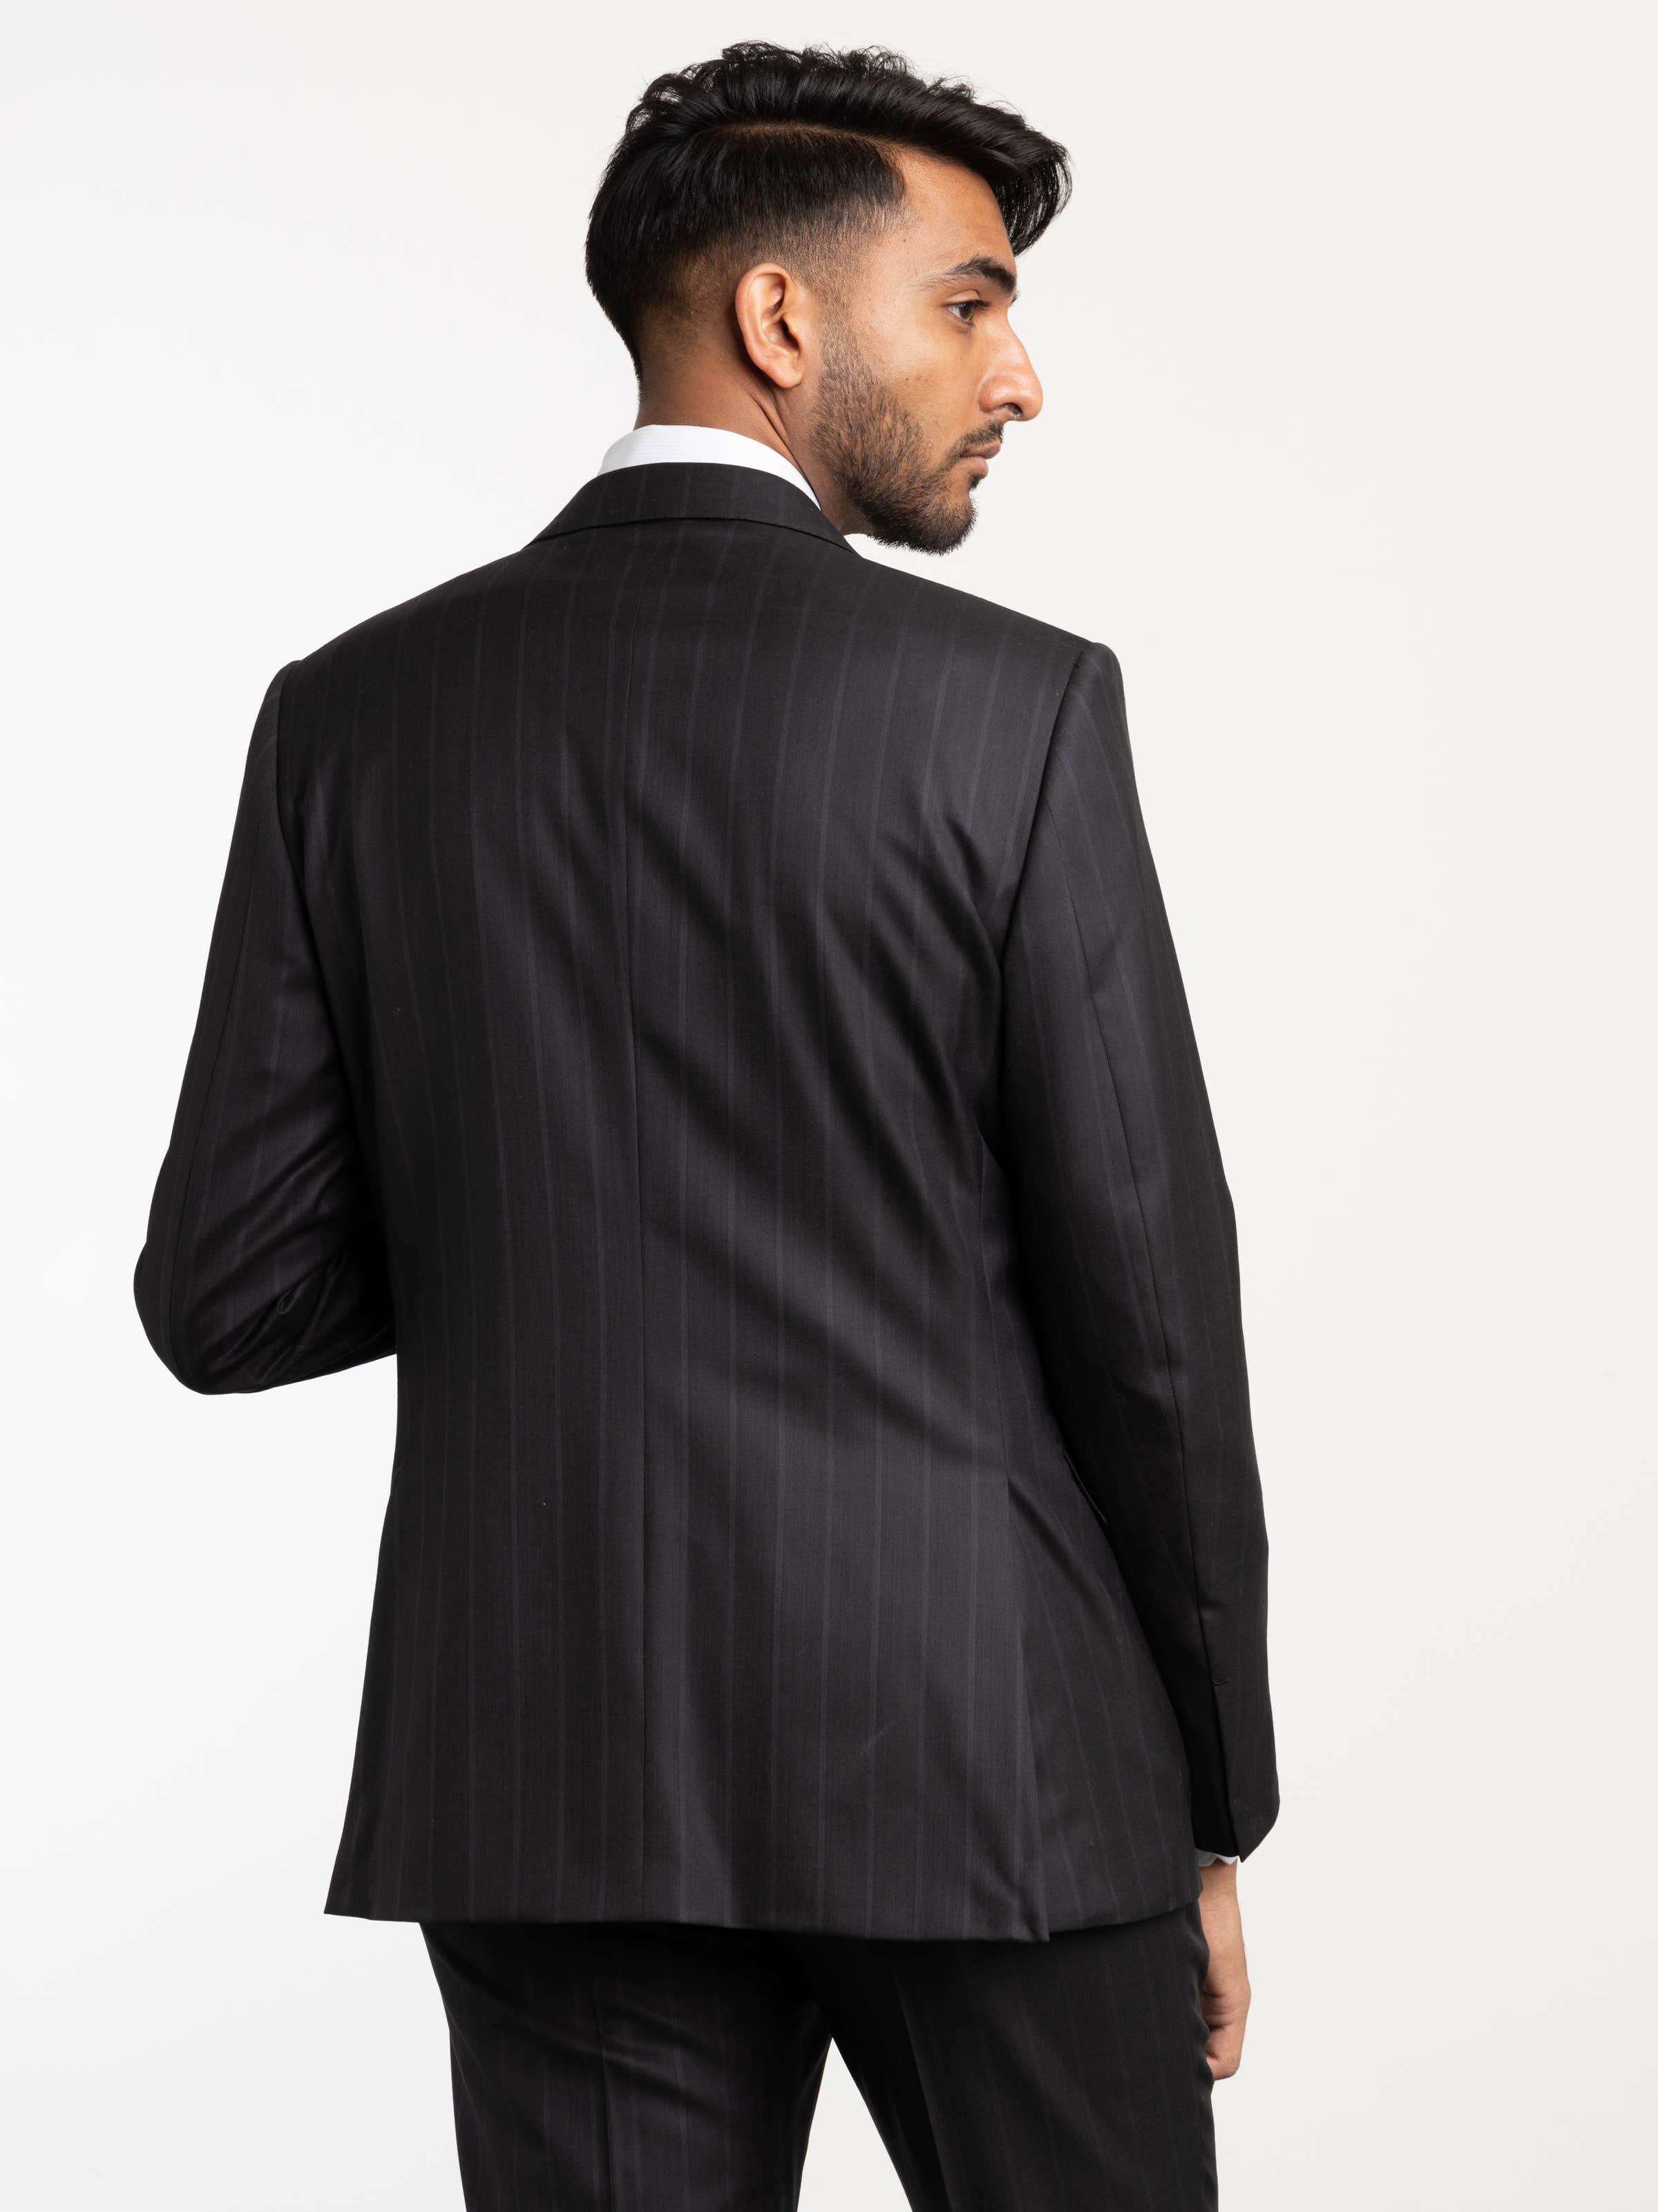 Black Pinstriped 15milmil15 Wool Suit